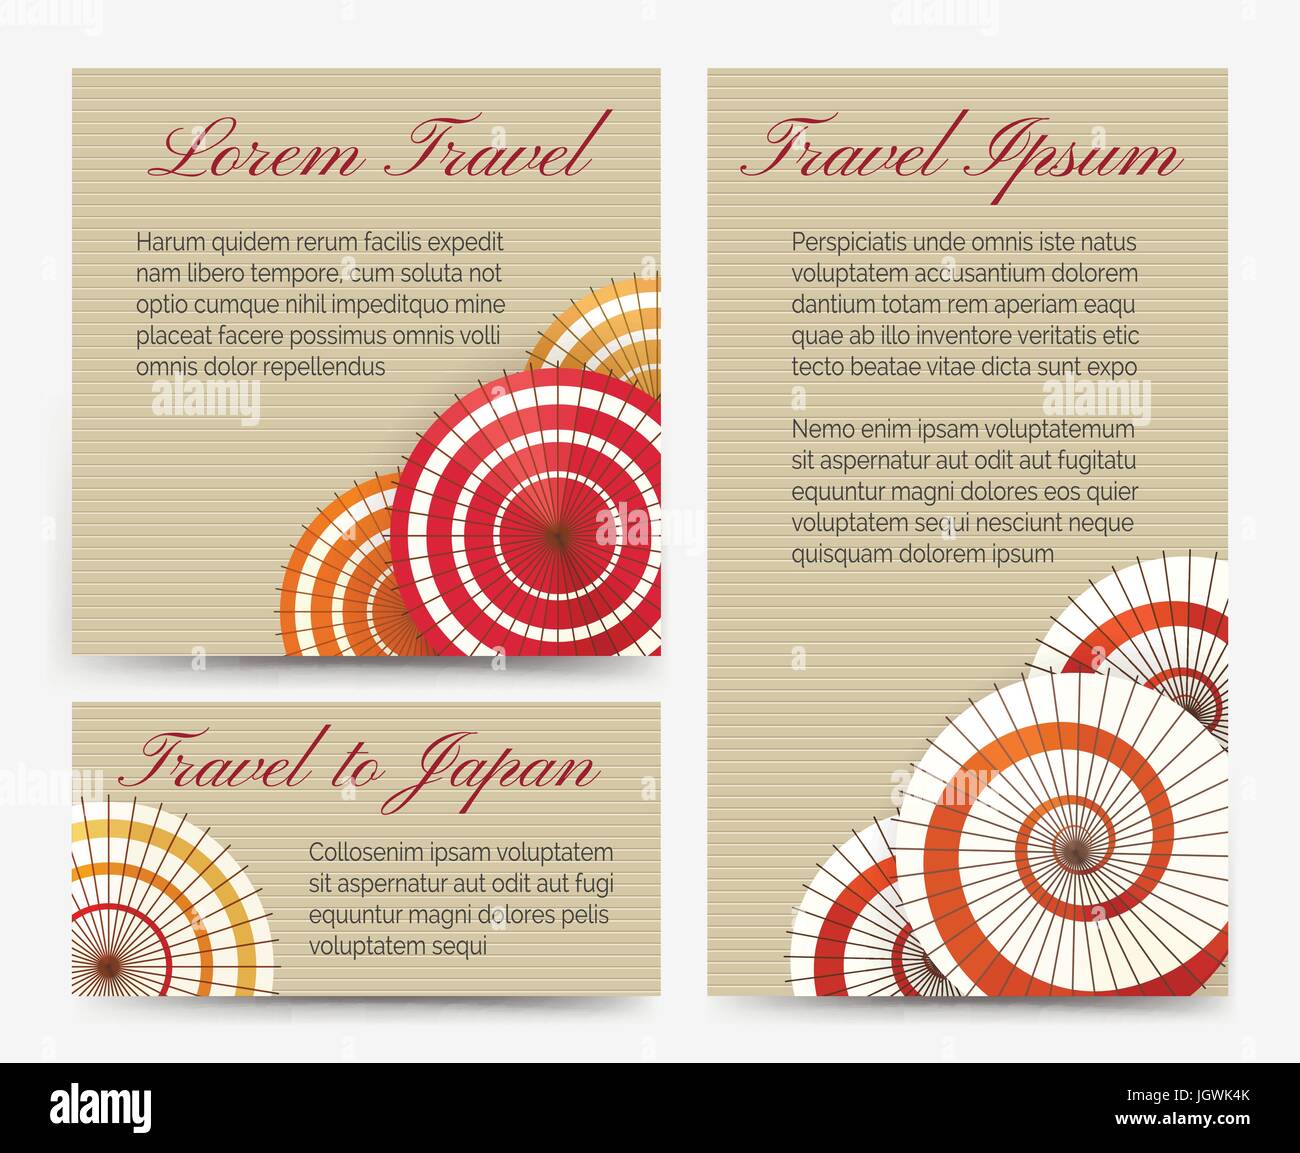 Traditionelle orientalische asiatische Einladungskarten mit chinesischen oder japanischen Regenschirm legen Sie Vektor-illustration Stock Vektor